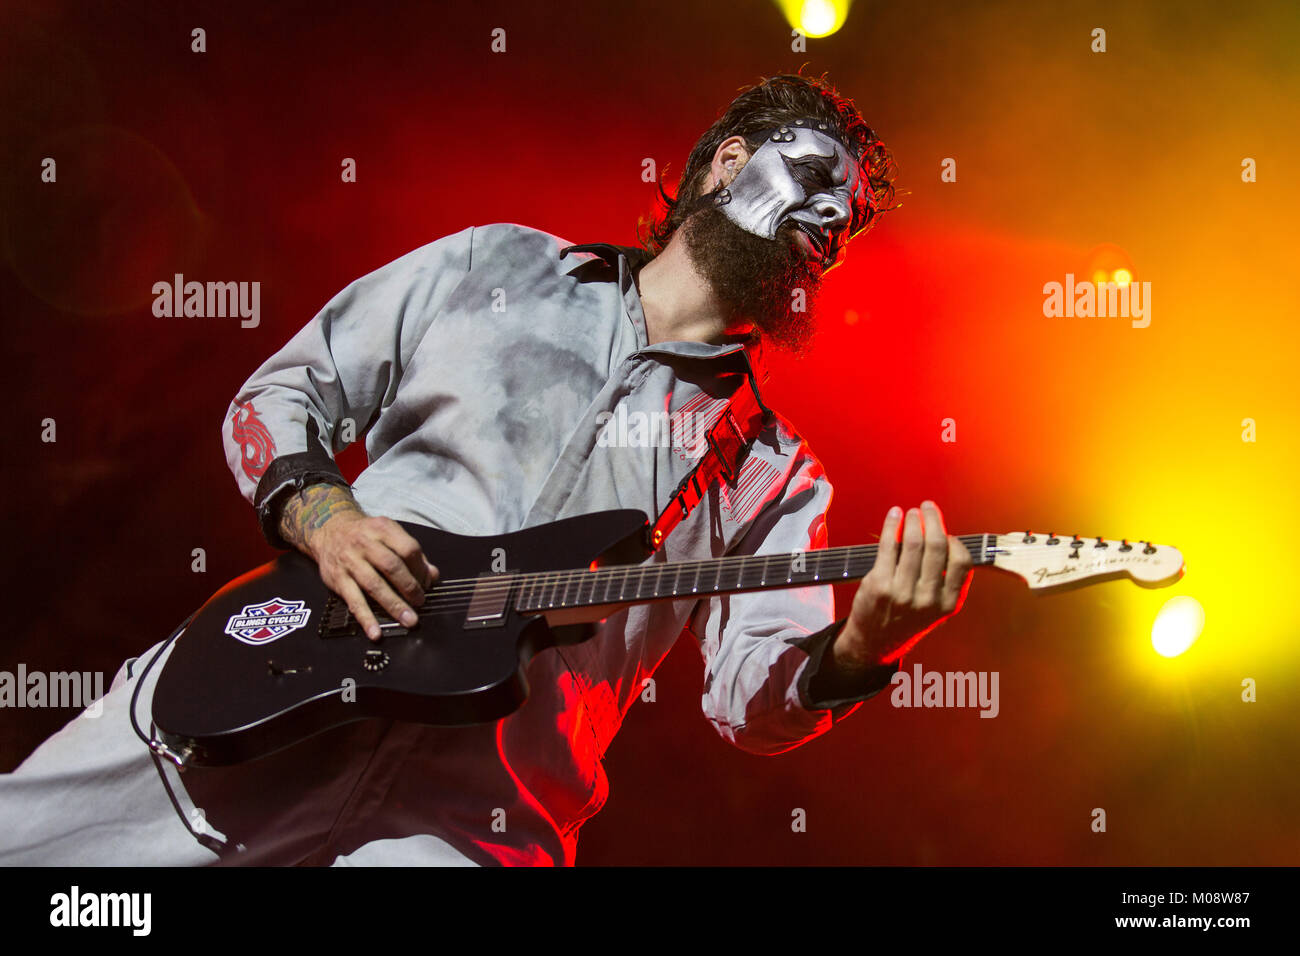 La banda de heavy metal Americana Slipknot realiza un concierto en vivo en  el festival de música danesa Roskilde Festival 2013. Aquí el músico y  guitarrista Jim Root es retratada enmascarado y